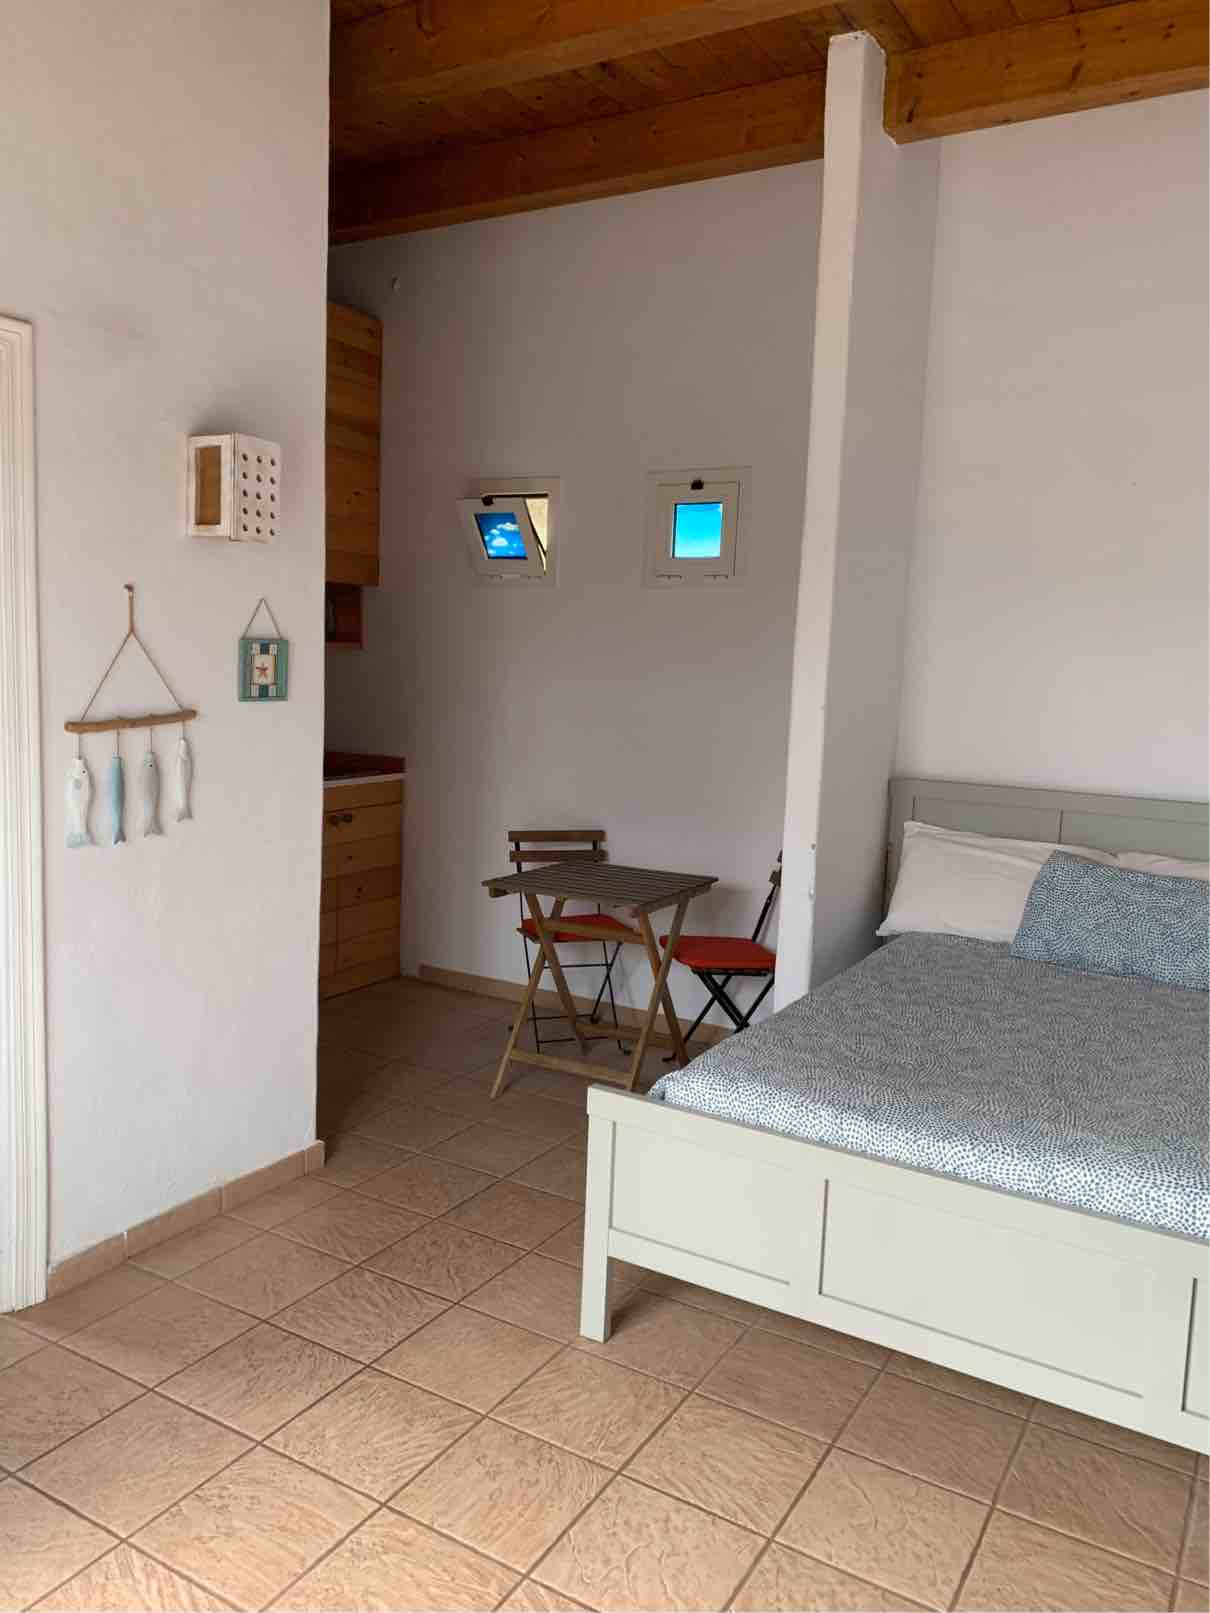 studio for rent in fuerteventura - bedroom